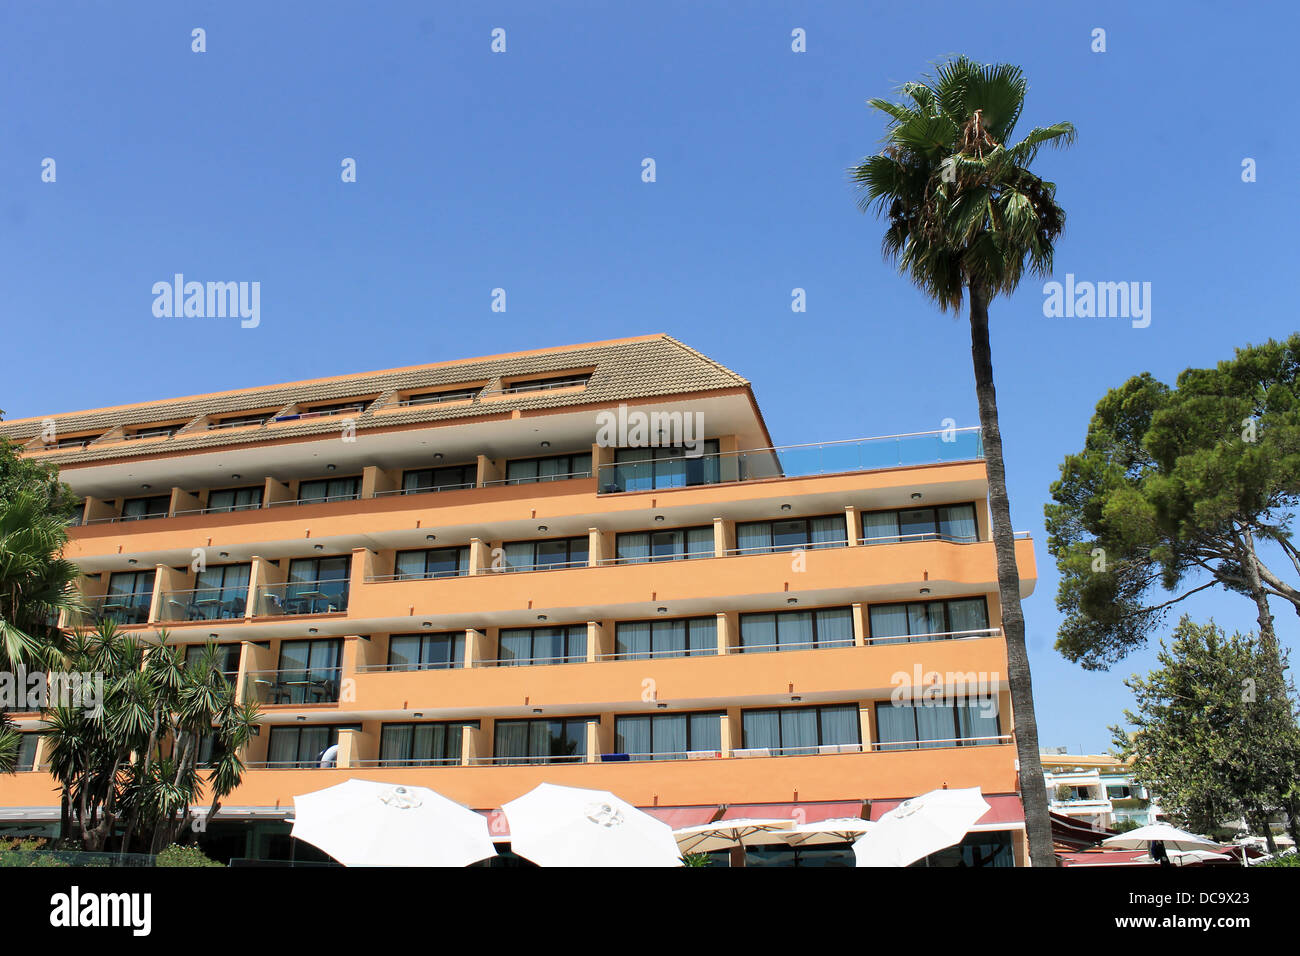 Vue panoramique de l'hôtel touristique espagnol et palmier, Majorque, Espagne. Banque D'Images